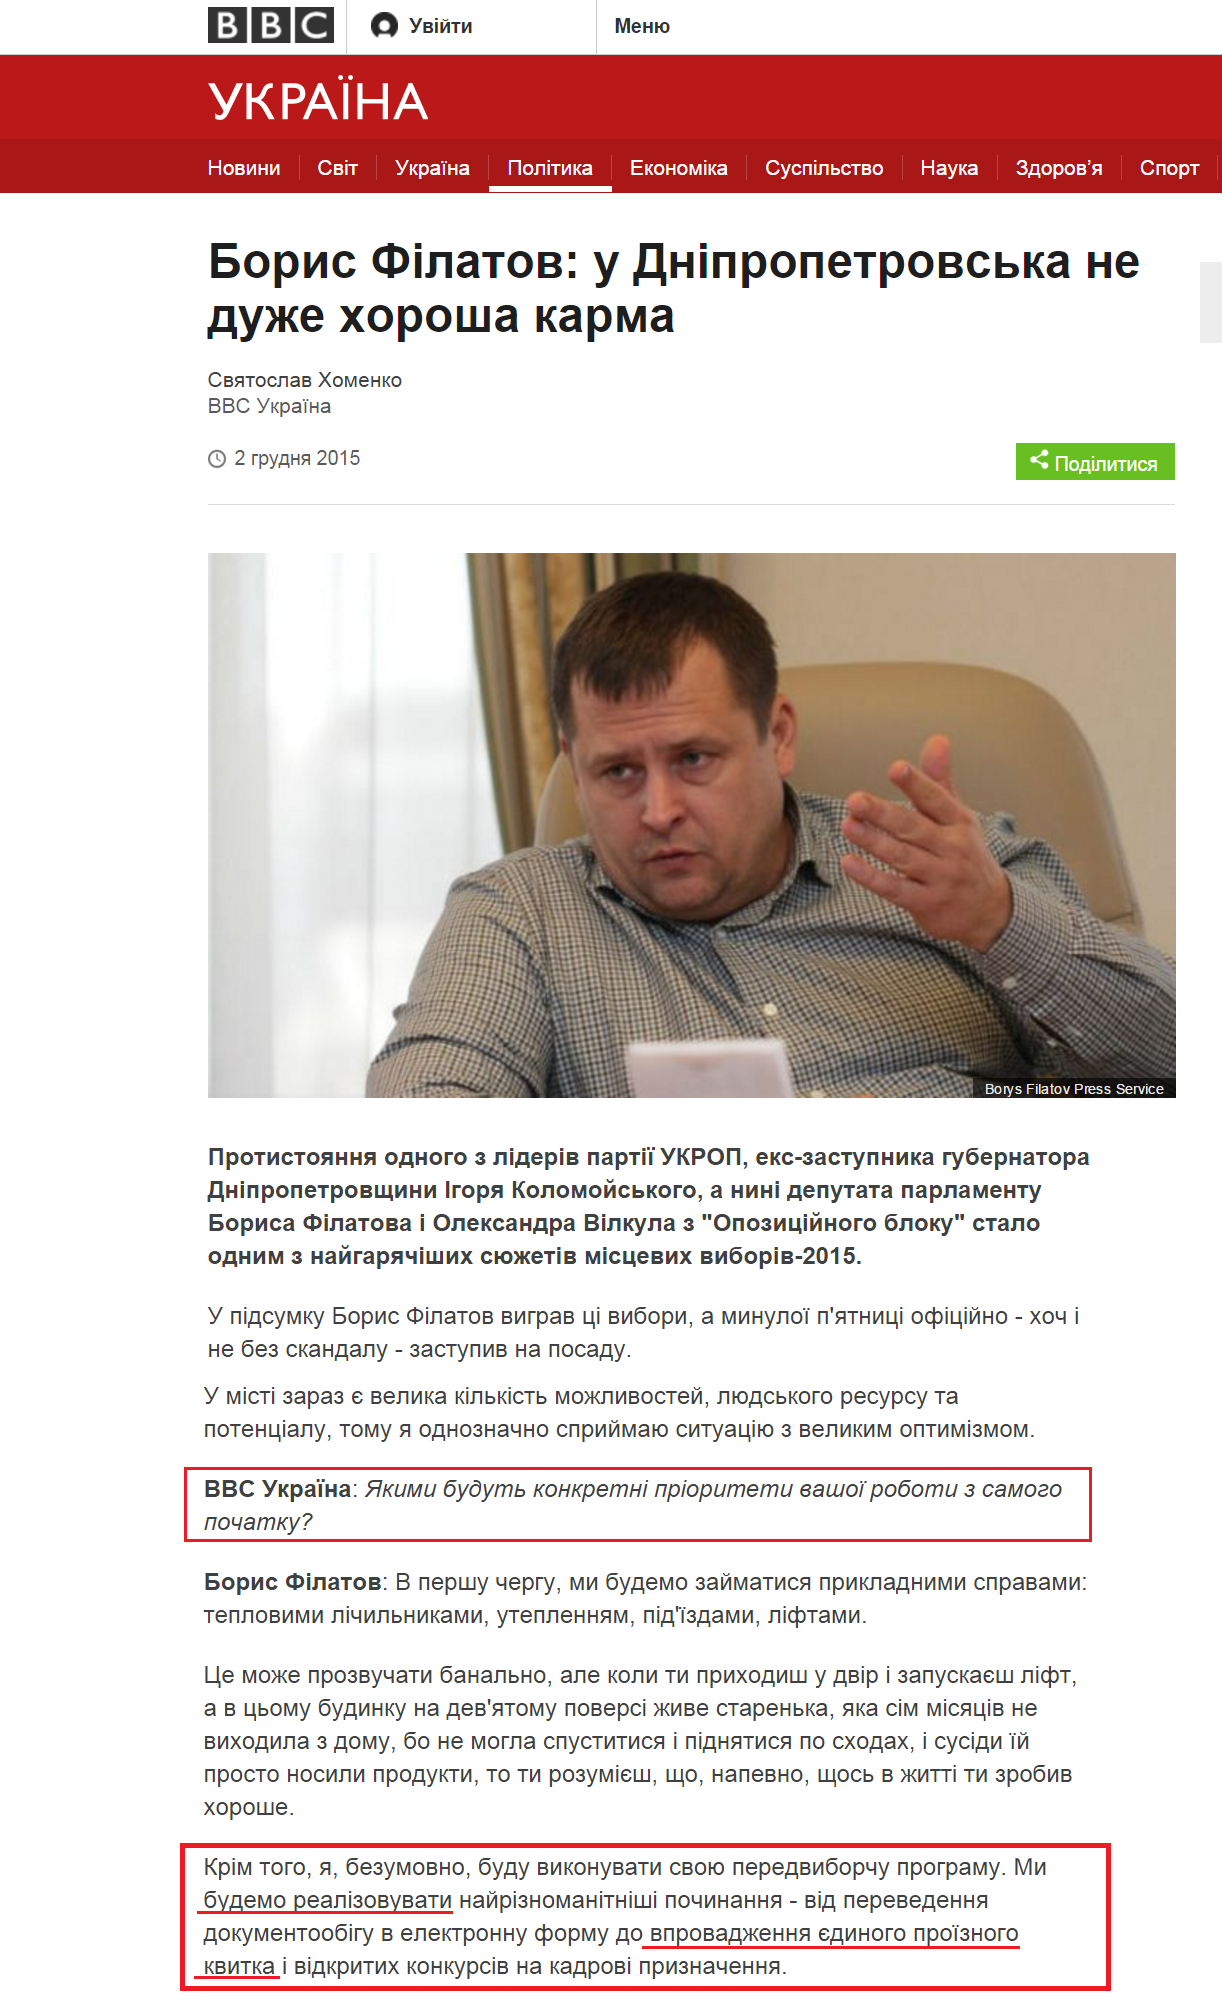 http://www.bbc.com/ukrainian/politics/2015/12/151202_filatov_sx?ocid=socialflow_facebook